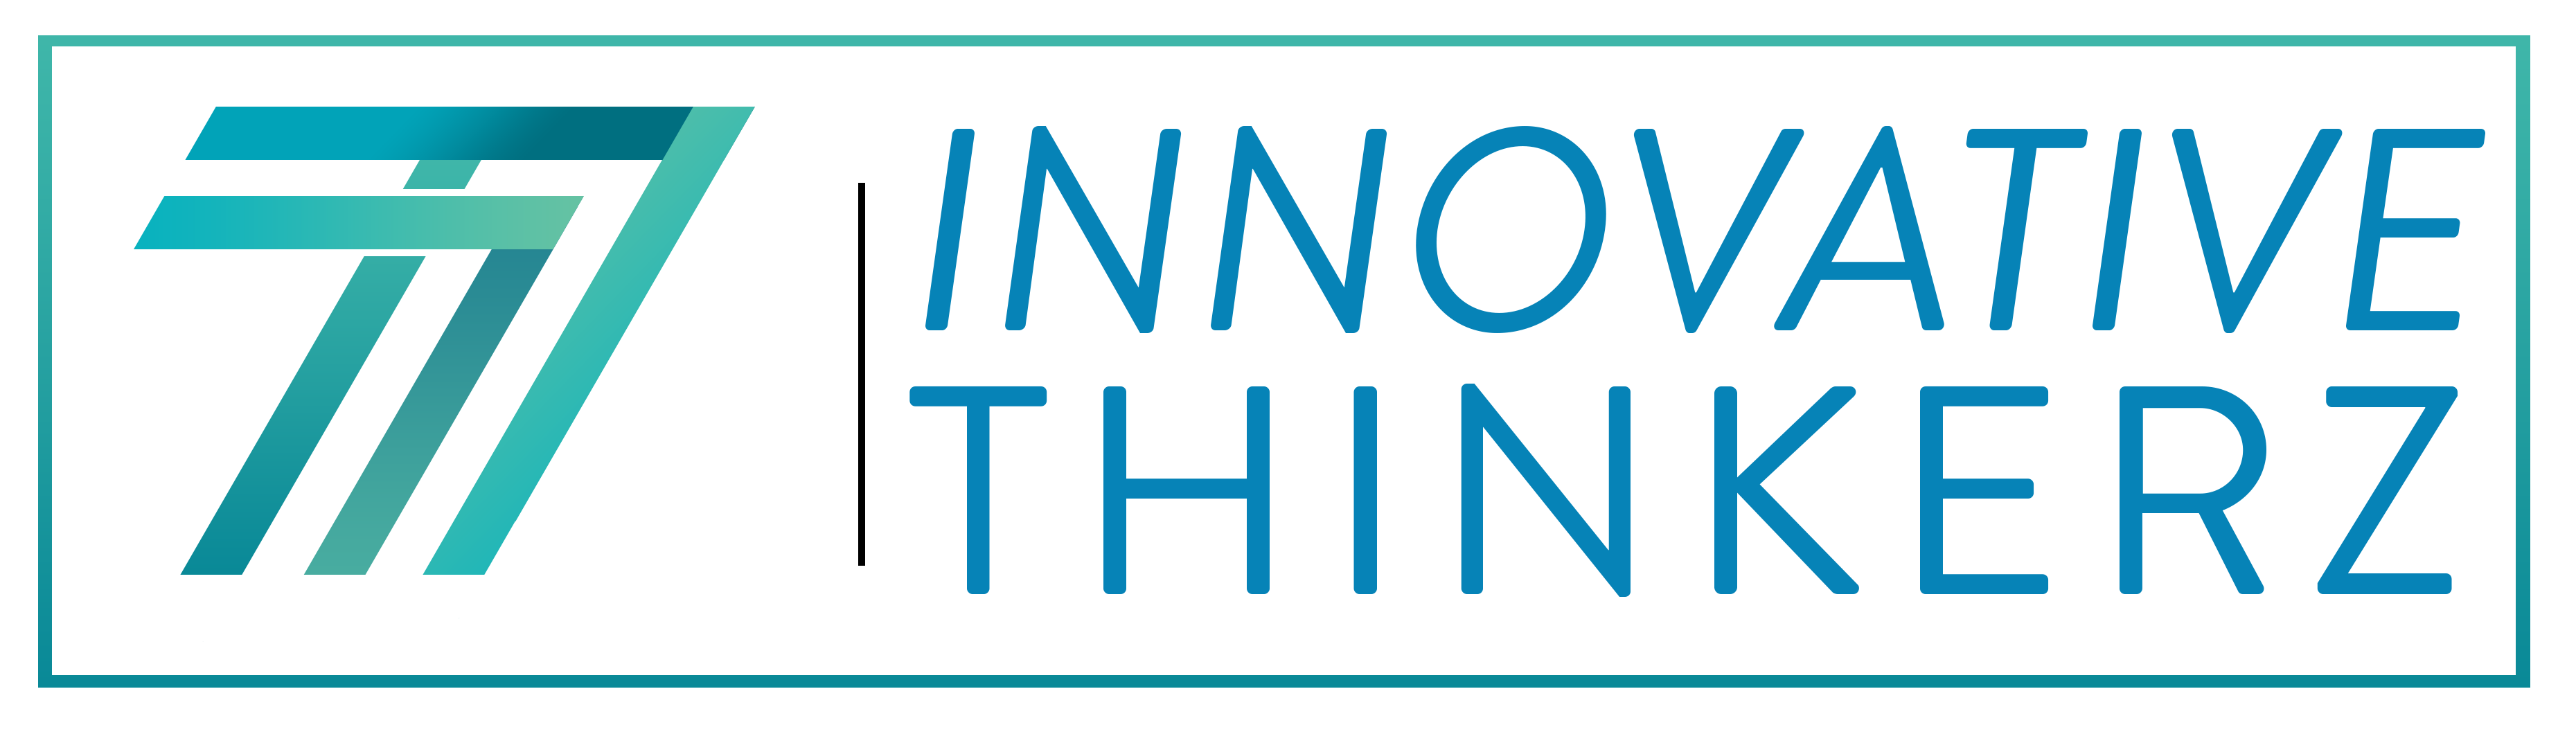 Innovative Thinkerz Logo